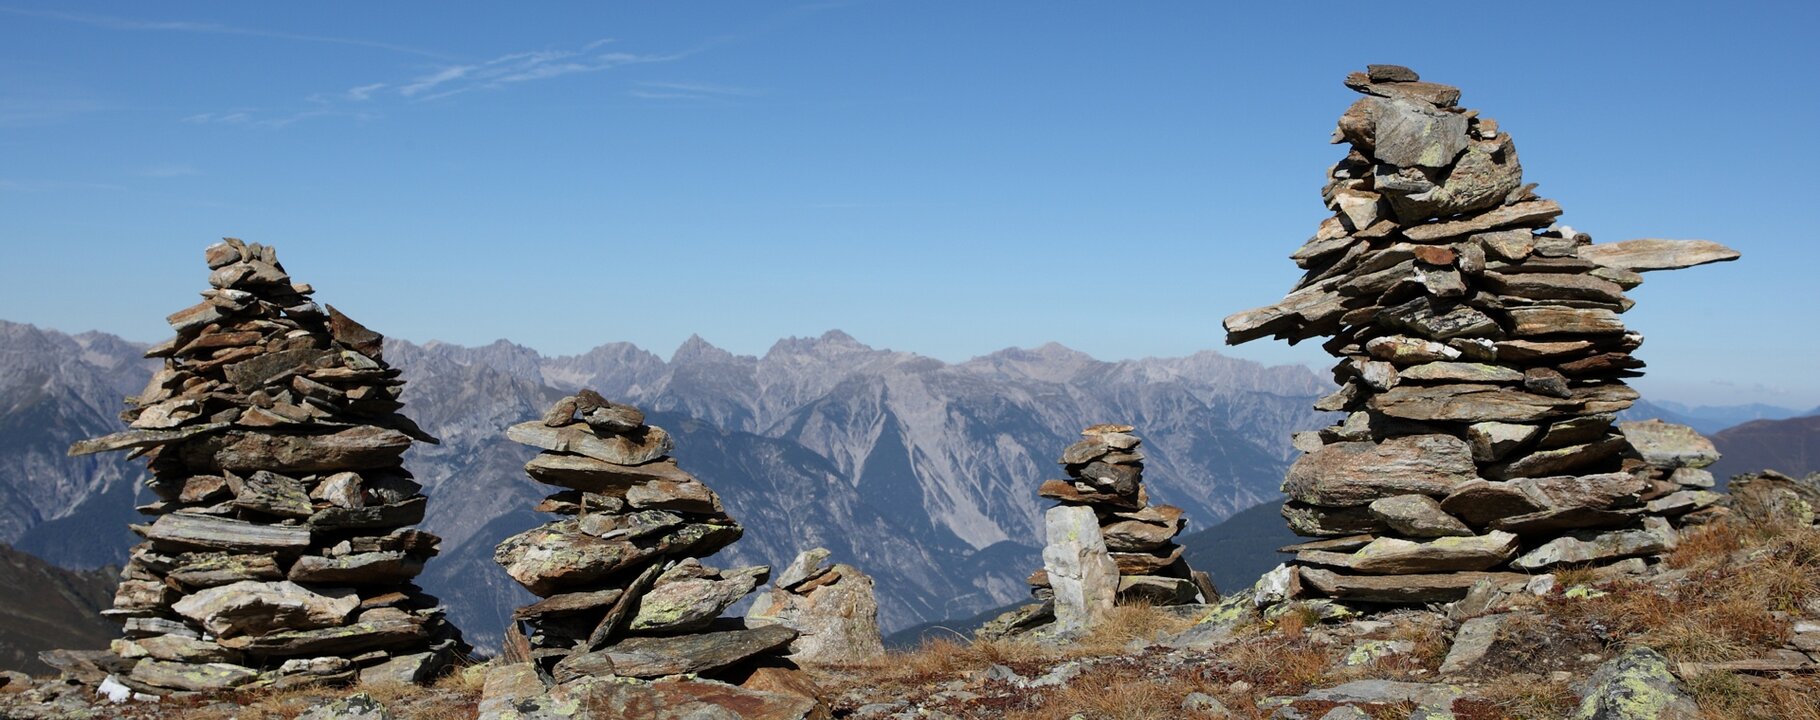 Steintürme bei der Wanderung in Serfaus-Fiss-Ladis in Tirol Österreich | © Andreas Kirschner